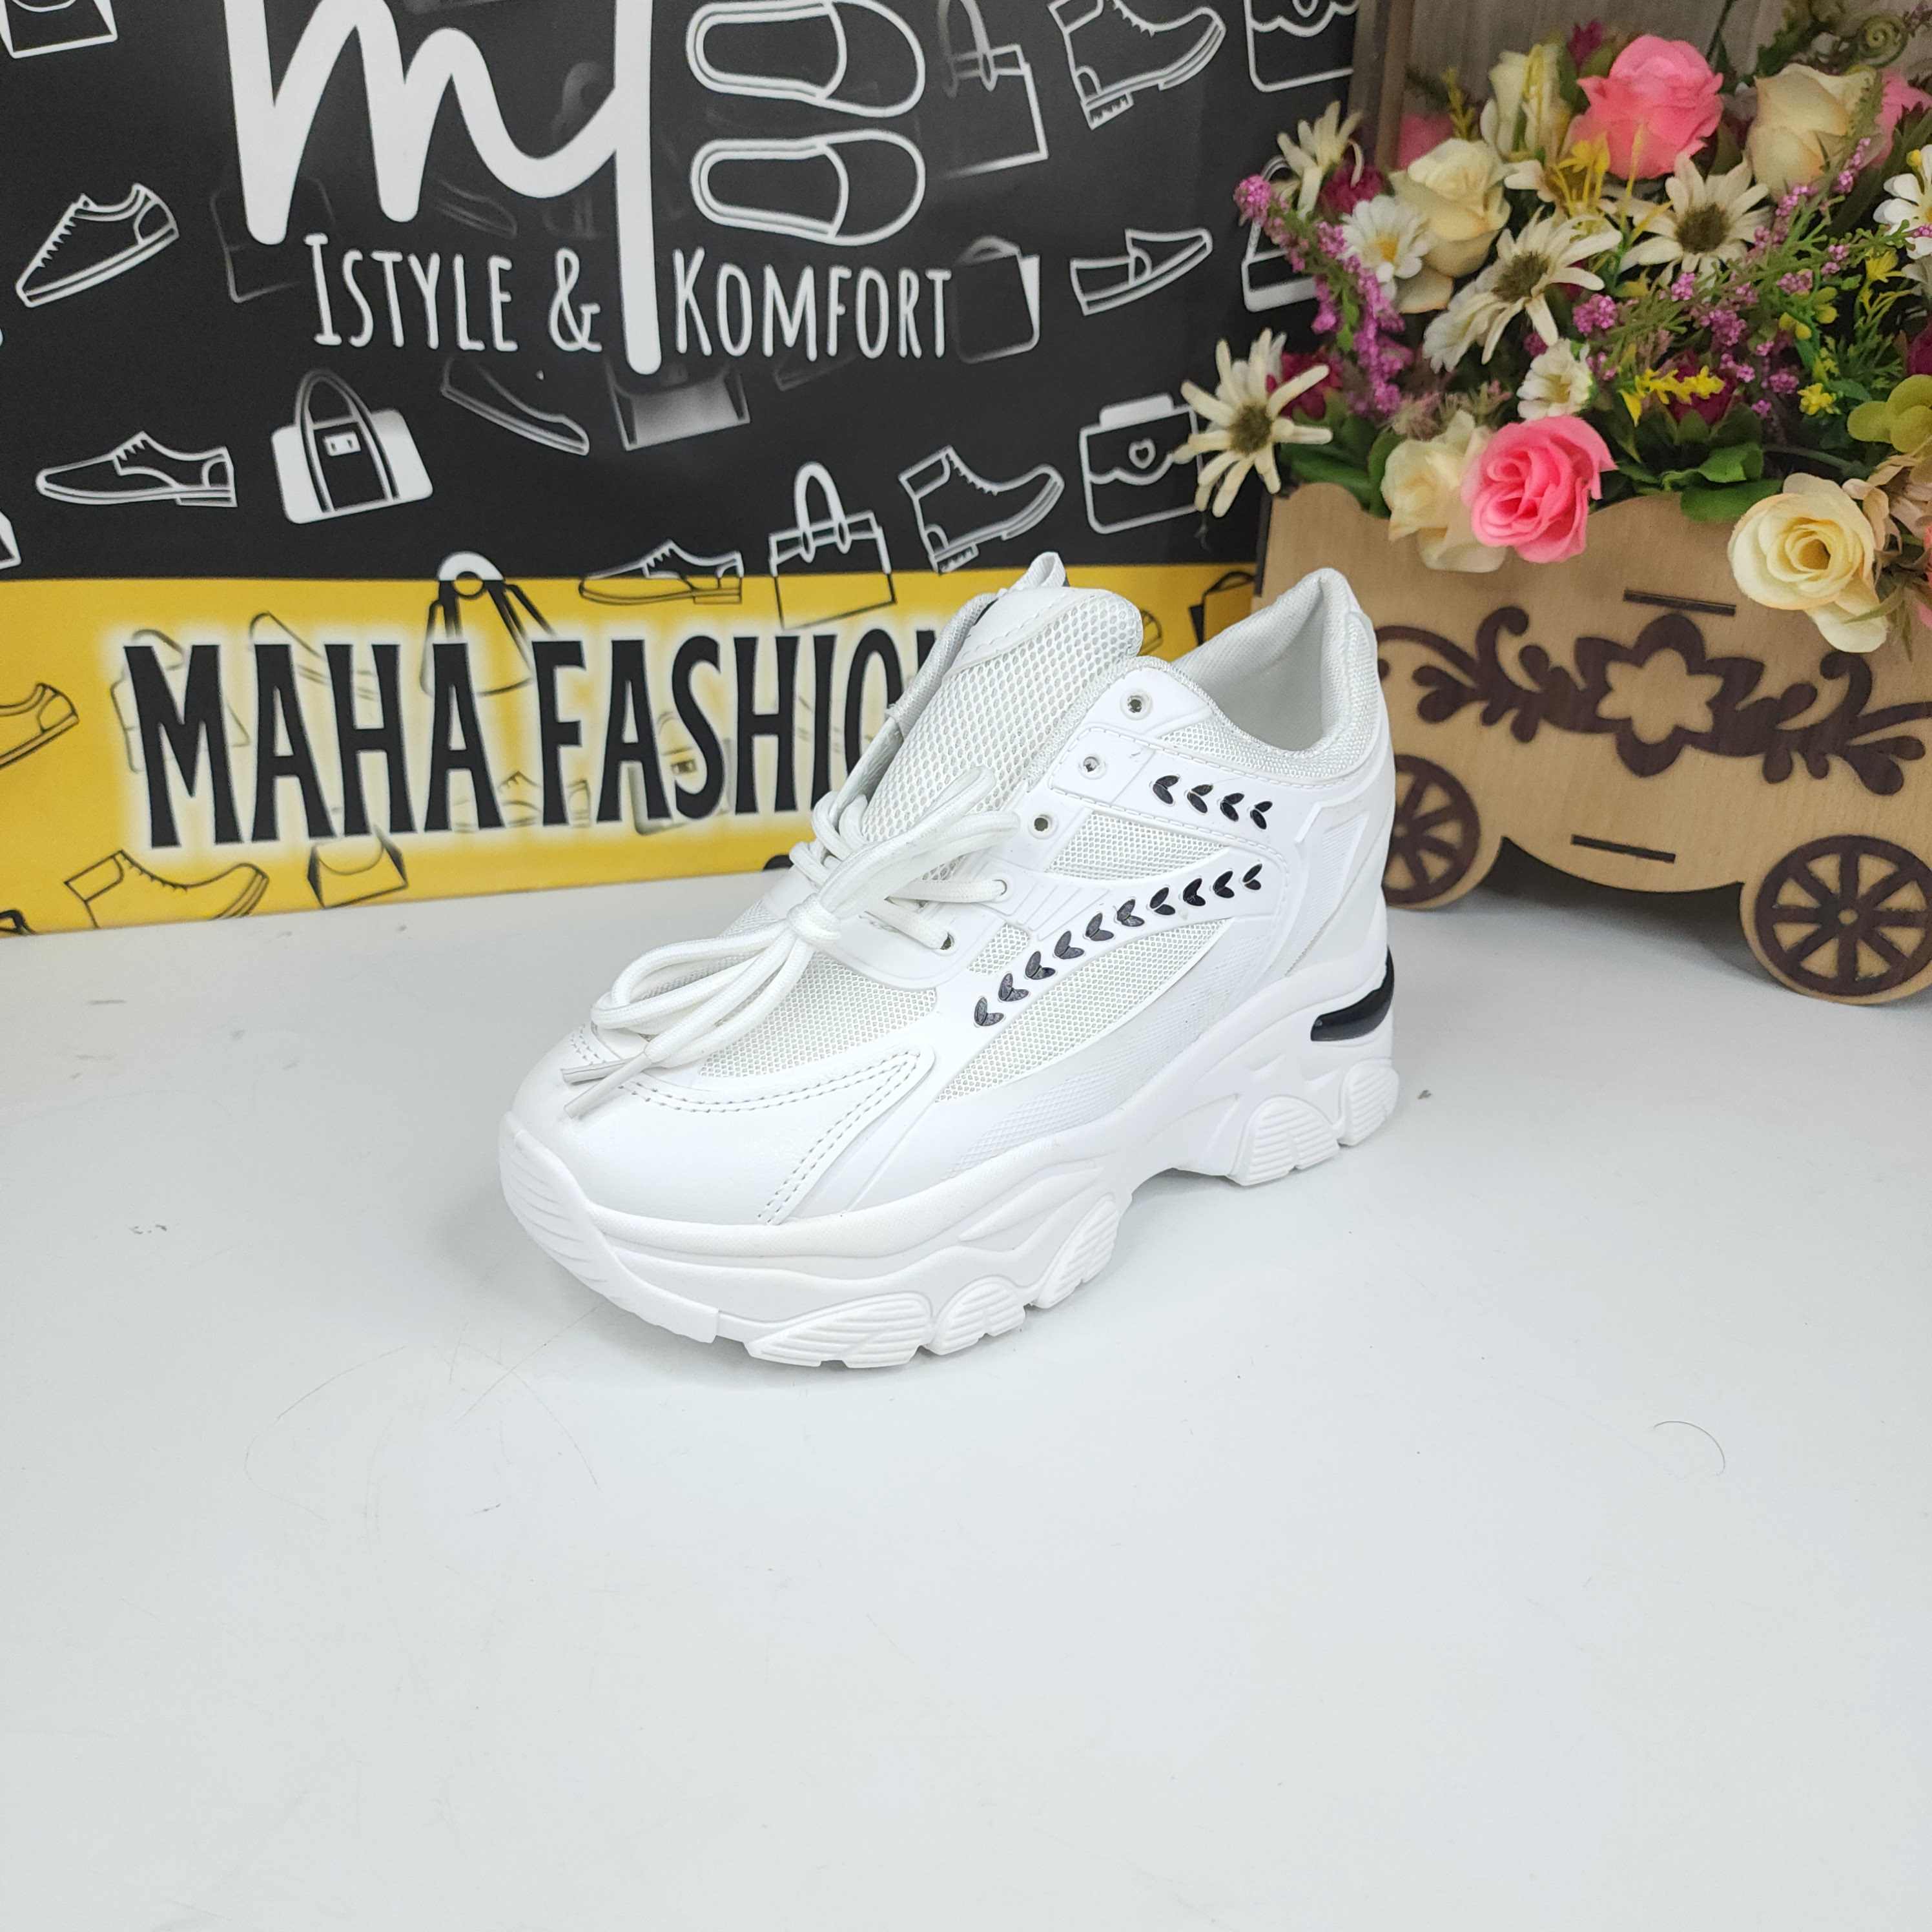 DWD-358 WHITE - Maha fashions -  